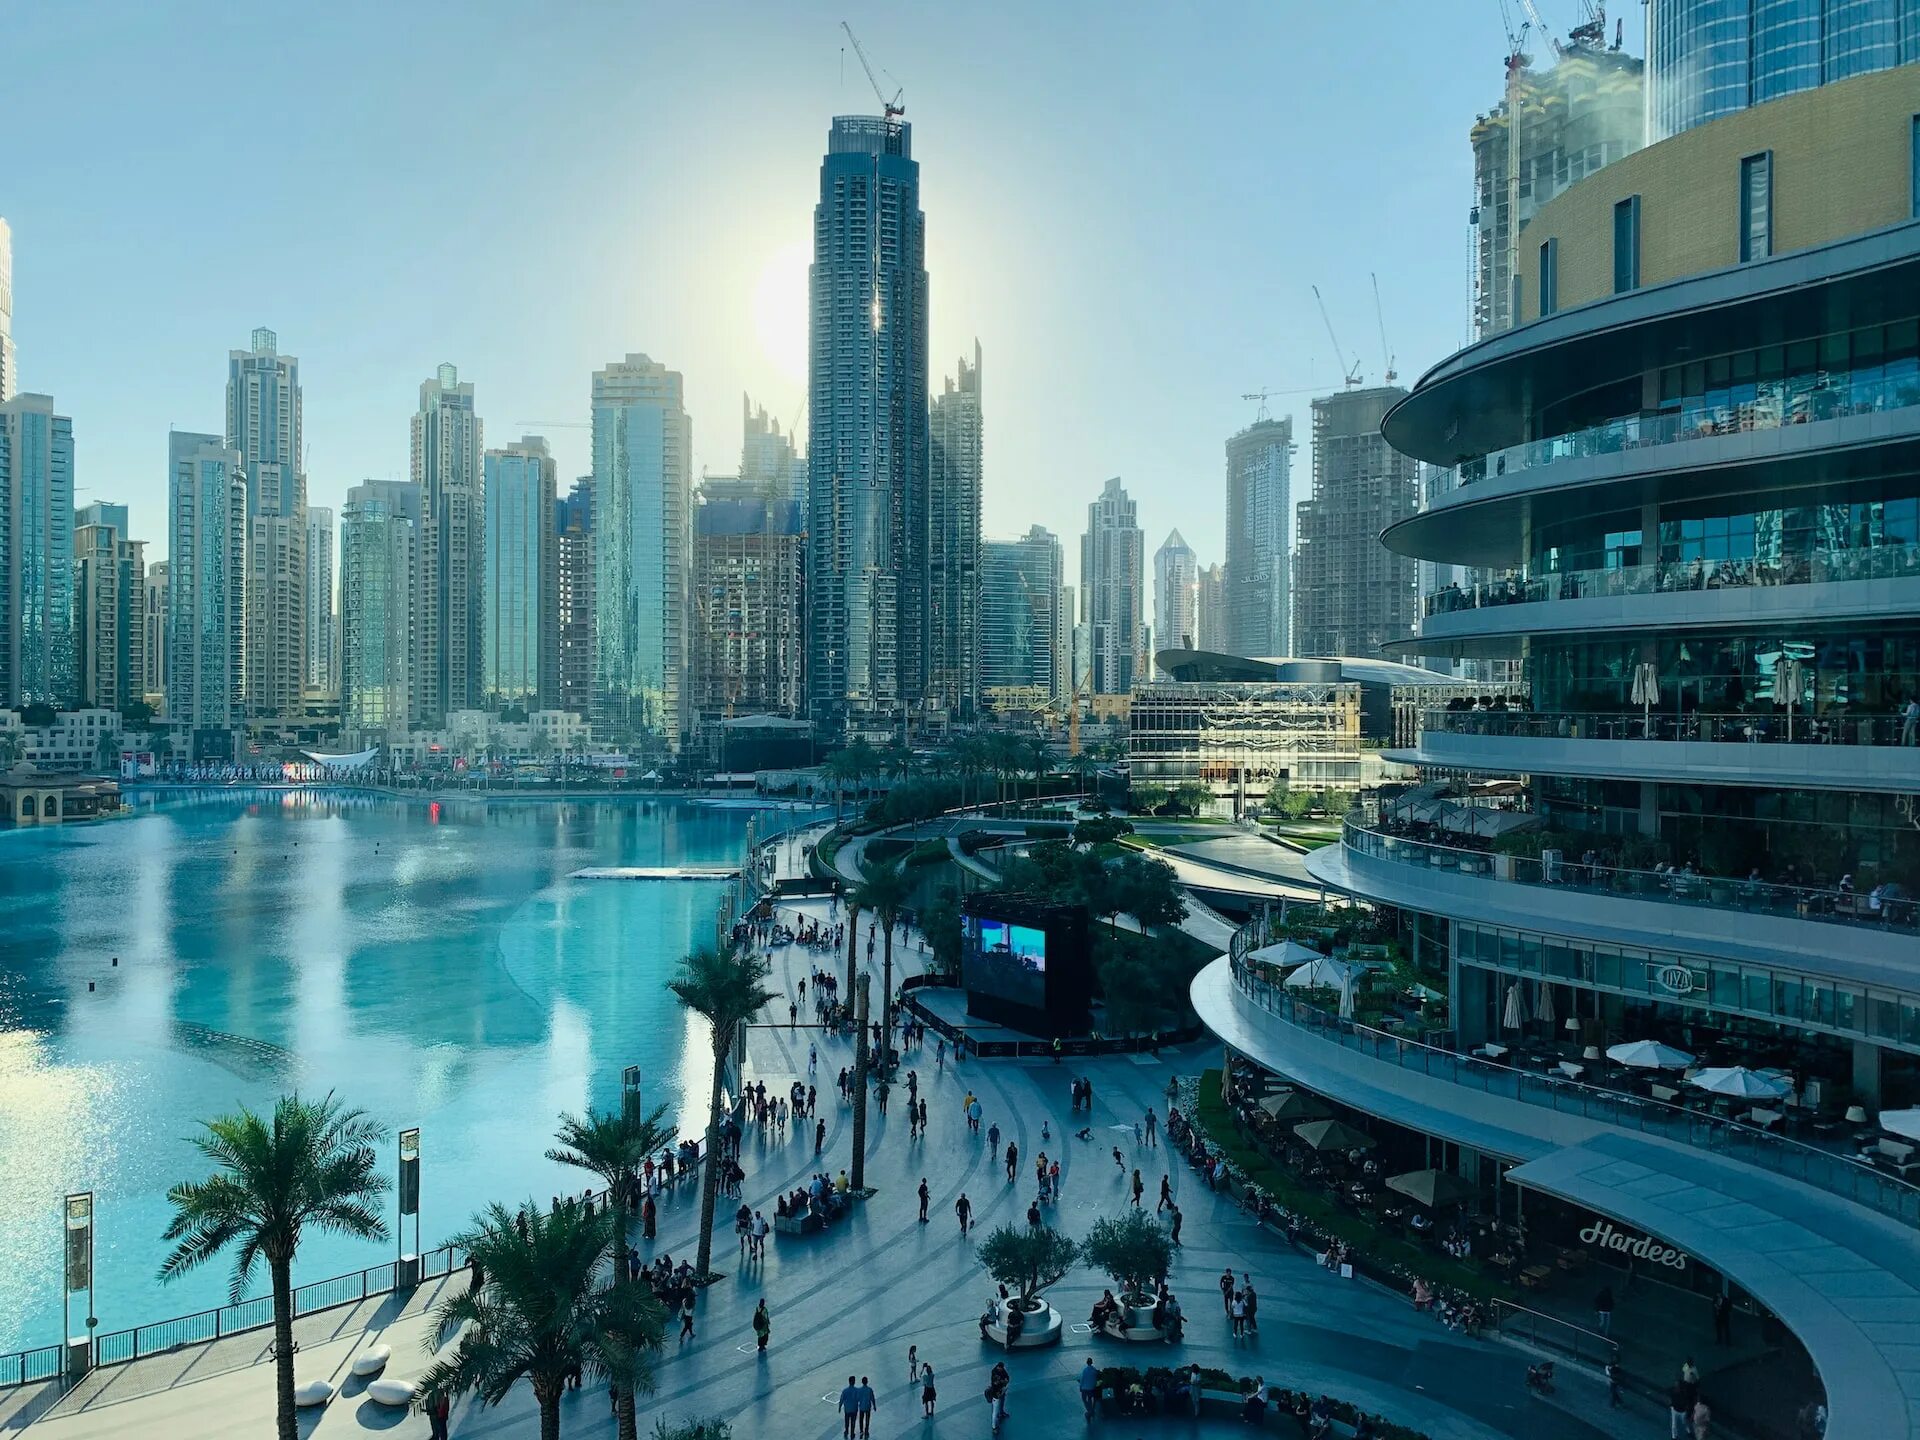 ОАЭ Дубай Молл. Cop28 Дубай. Венчурный рынок ОАЭ. Фото Дубай 2023. Погода в дубае сегодня и температура